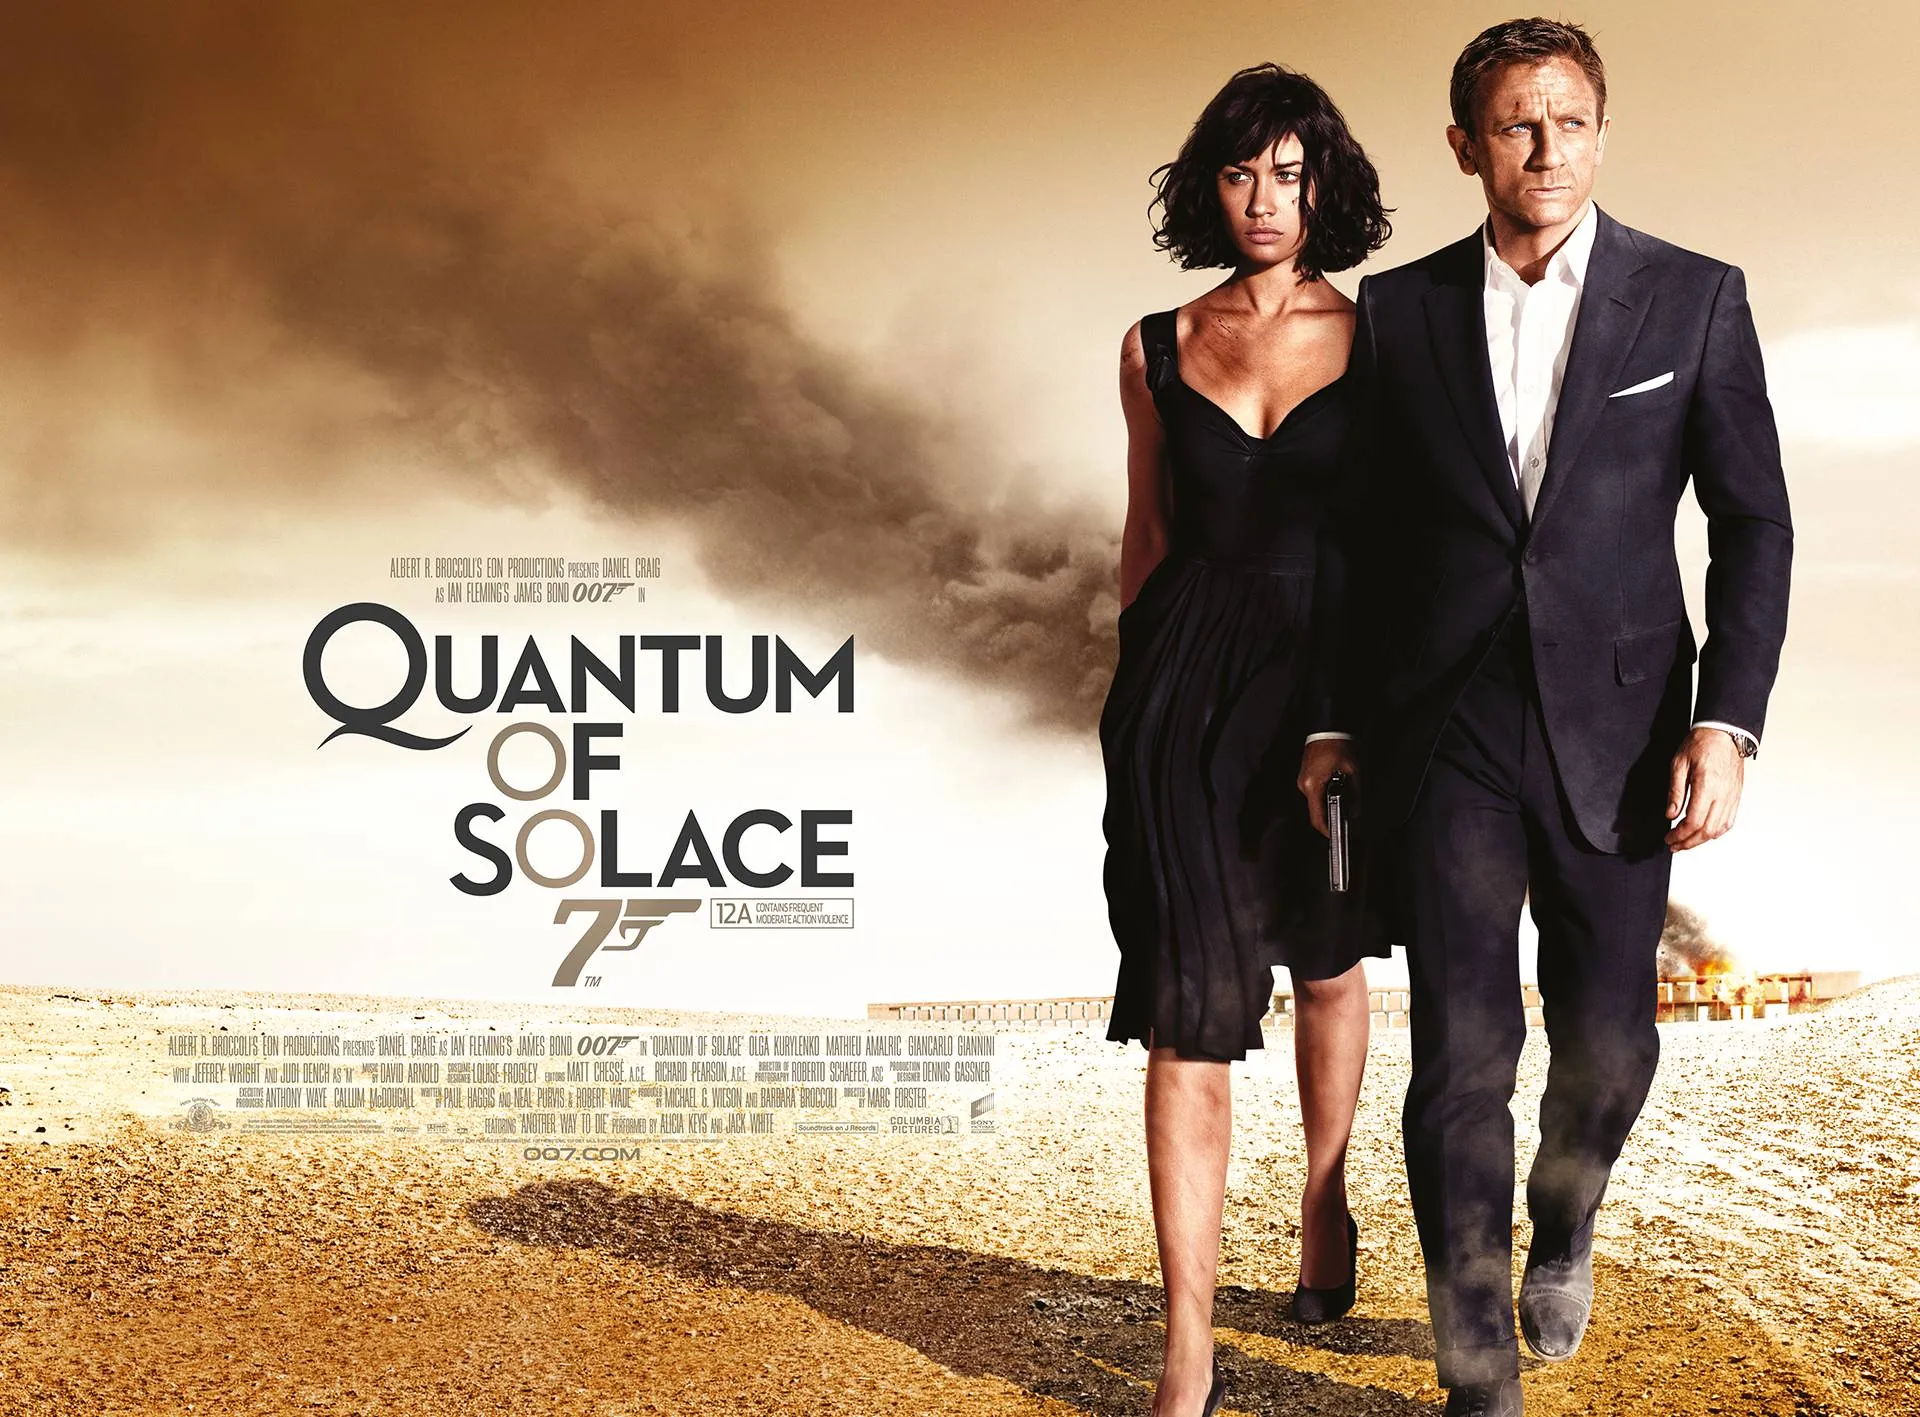 Quantum of solace (2008)